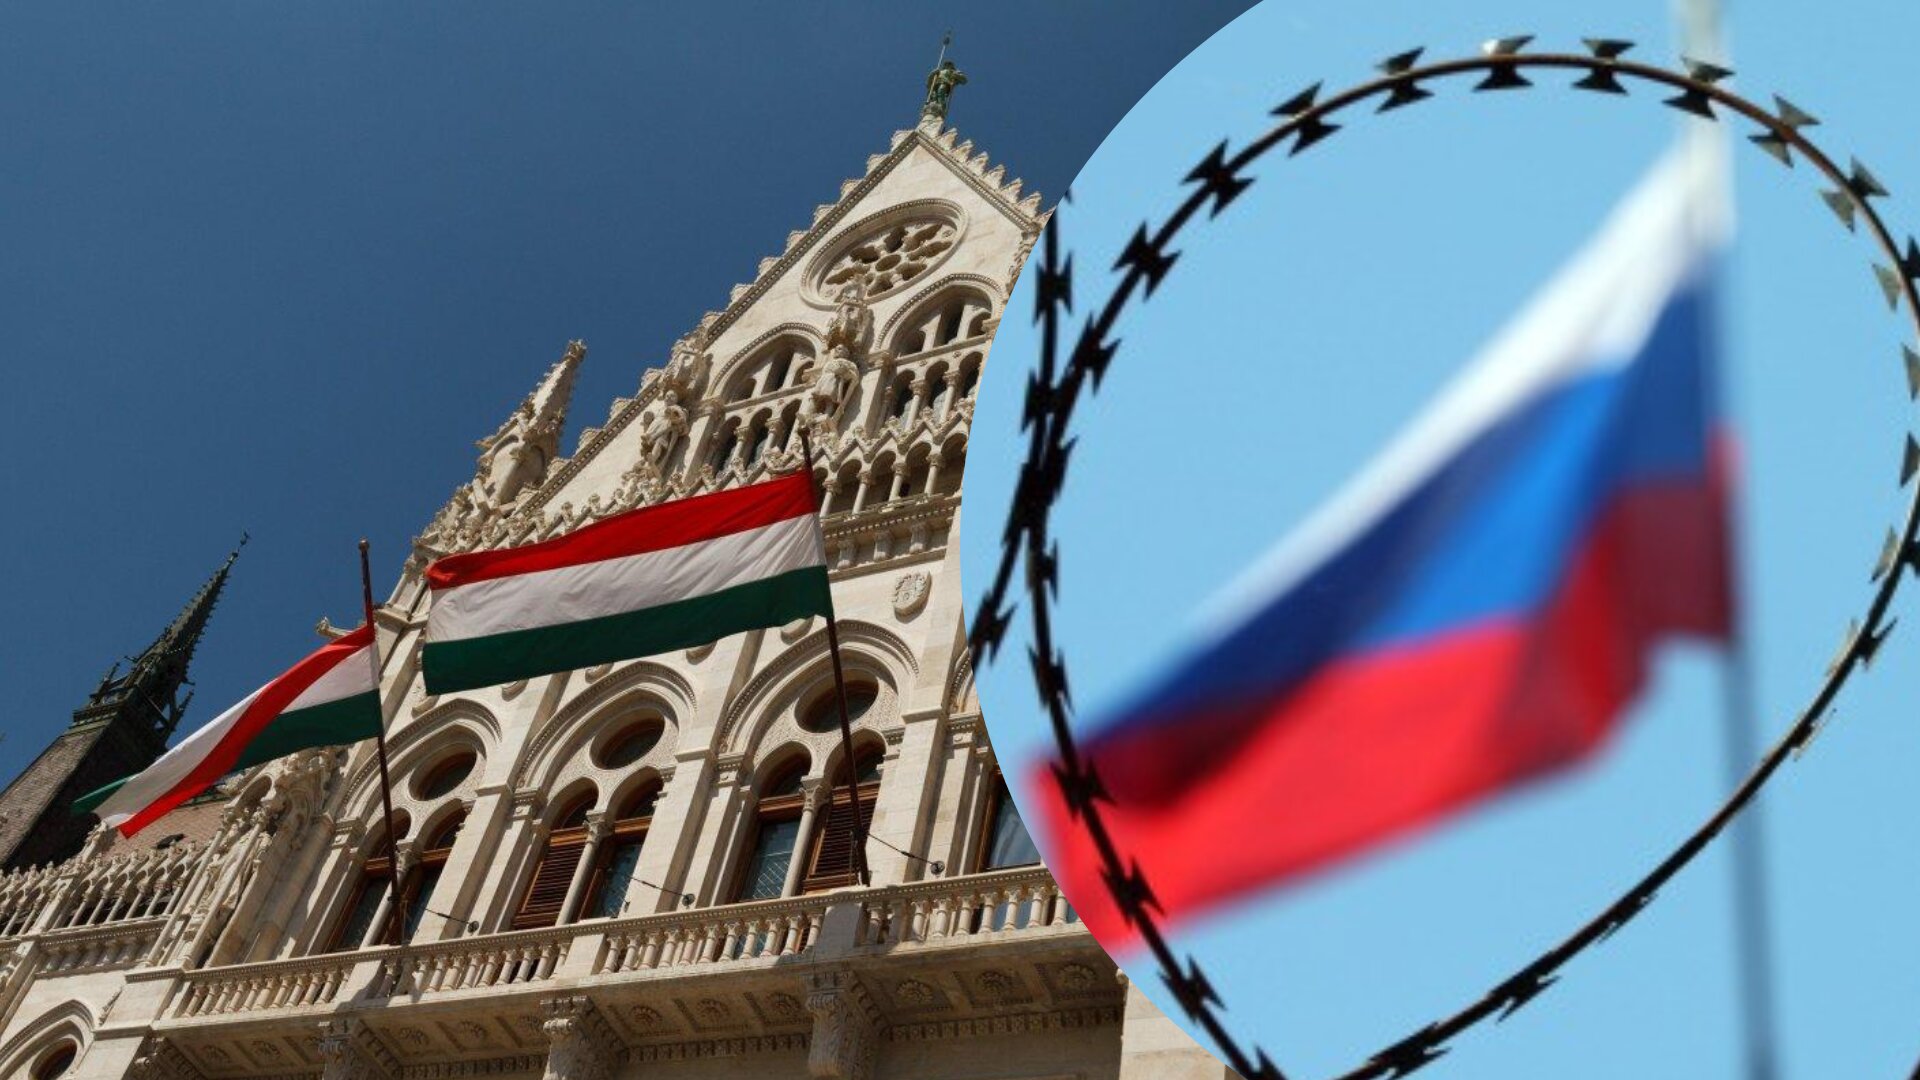 Угорщина станом на 25 листопада заморозила російські активи на суму майже 350 мільярдів форинтів, тобто 870 млн євро.